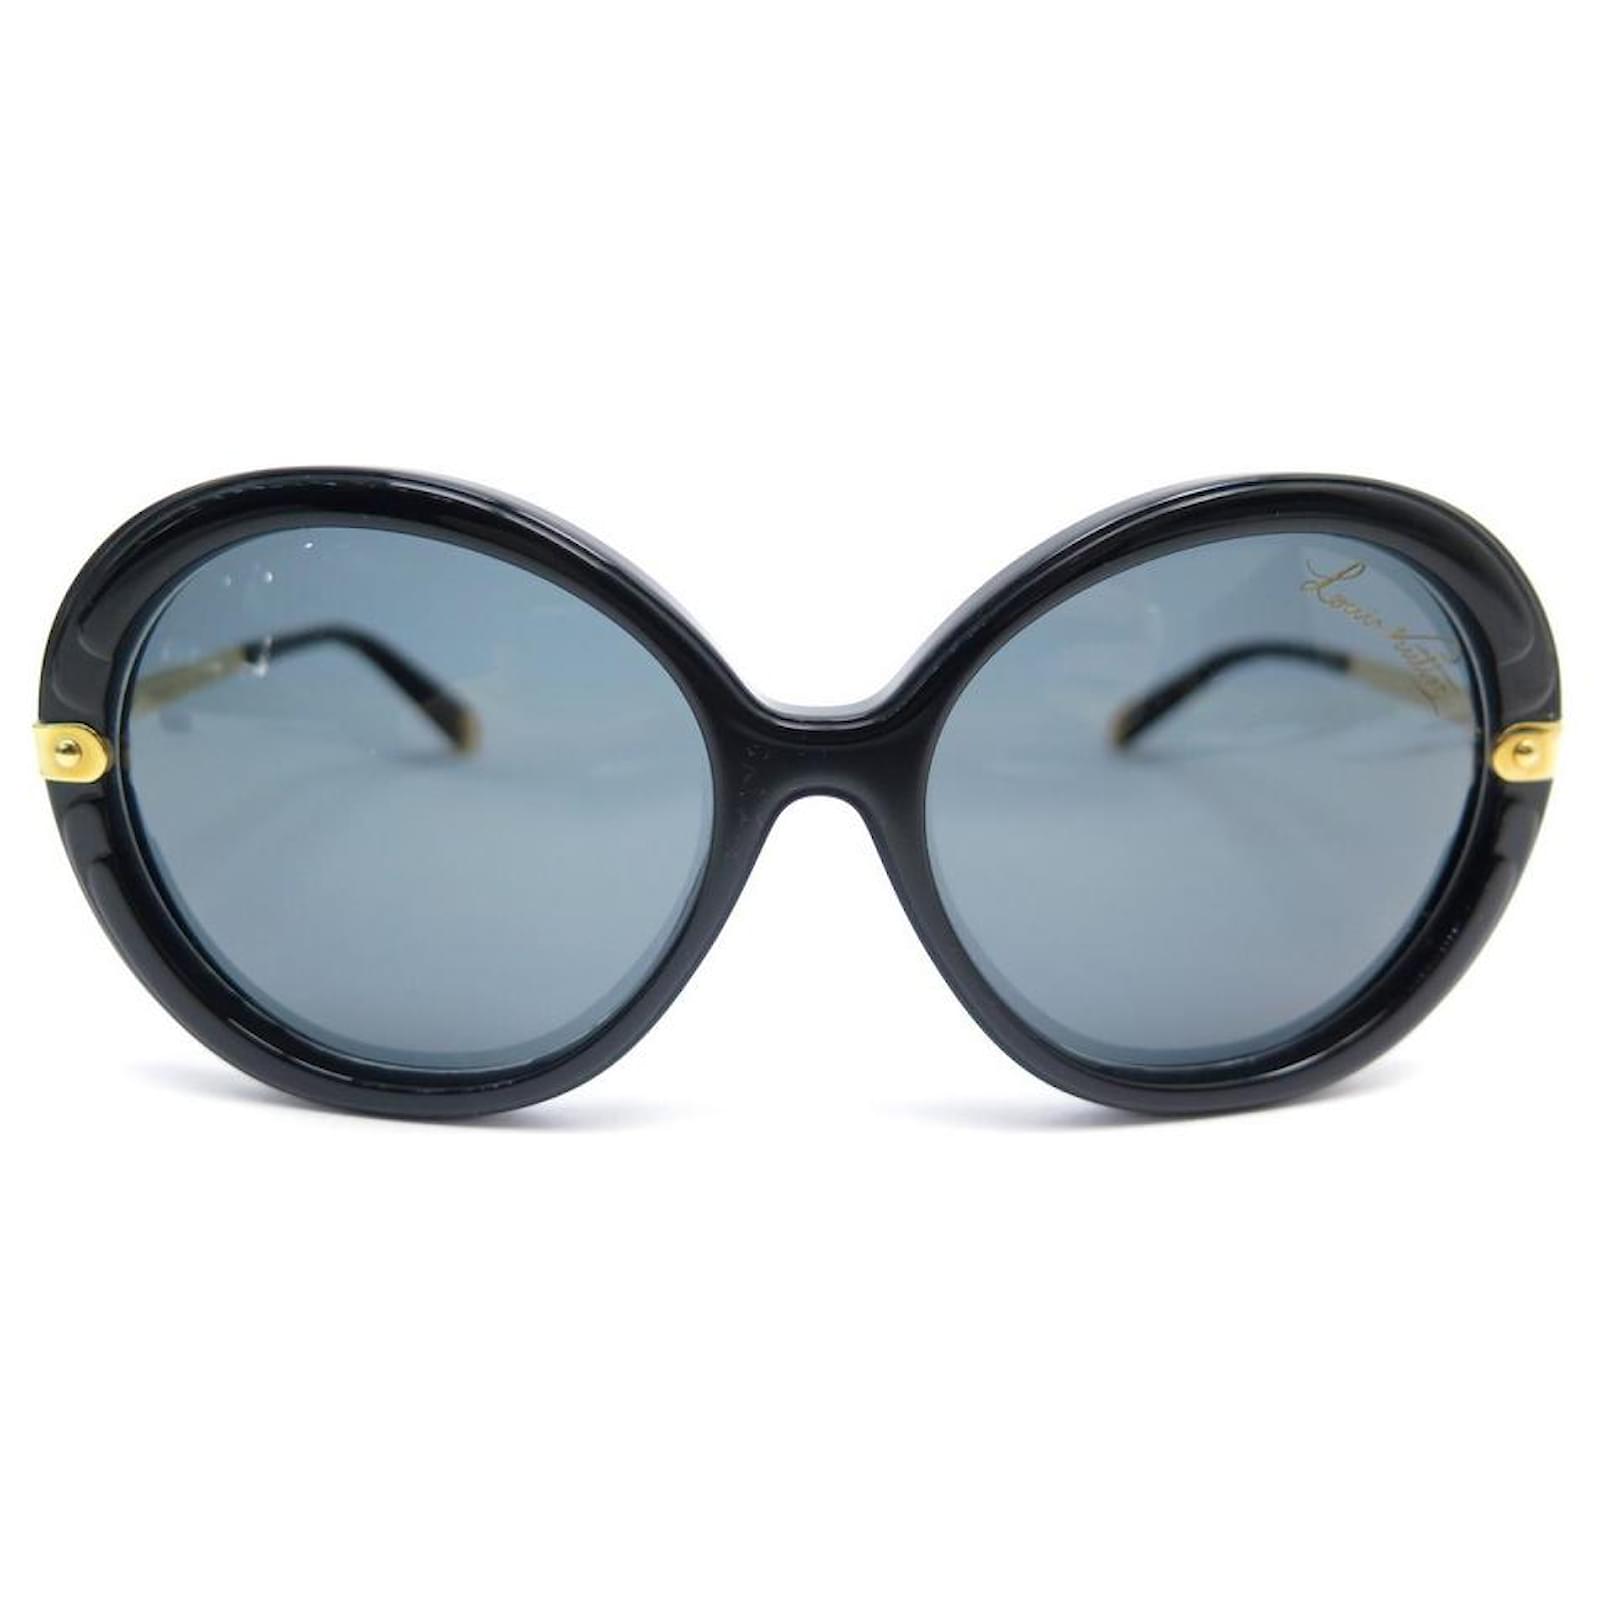 Louis Vuitton, Accessories, Louis Vuitton Sunglasses Case